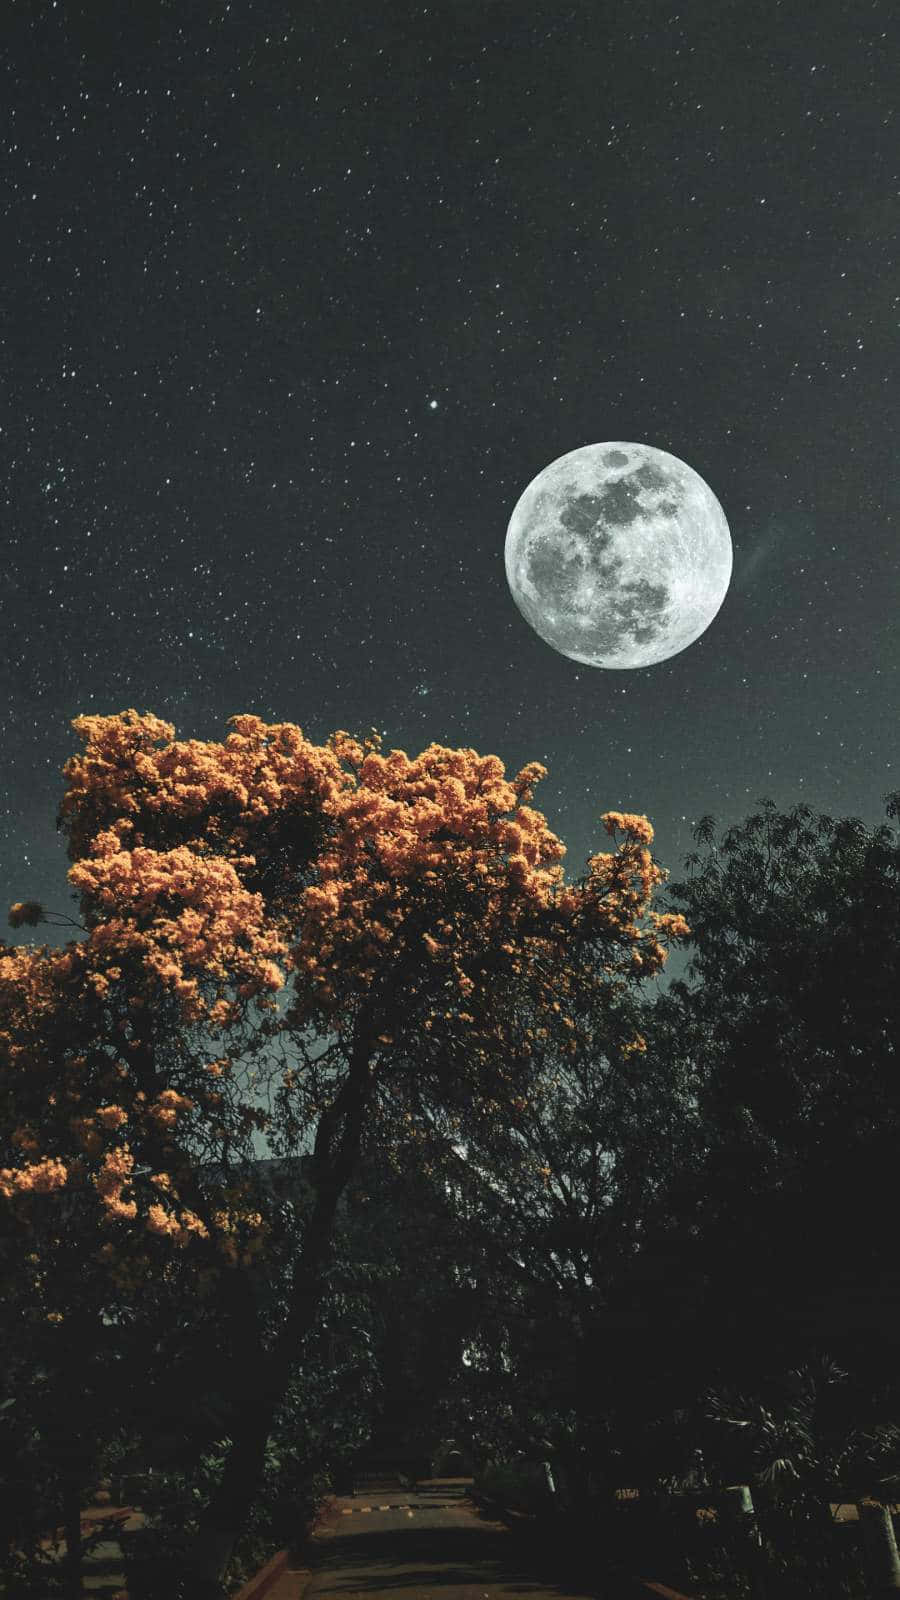 Iphonede La Luna Y Las Estrellas En El Cielo Nocturno Del Árbol. Fondo de pantalla